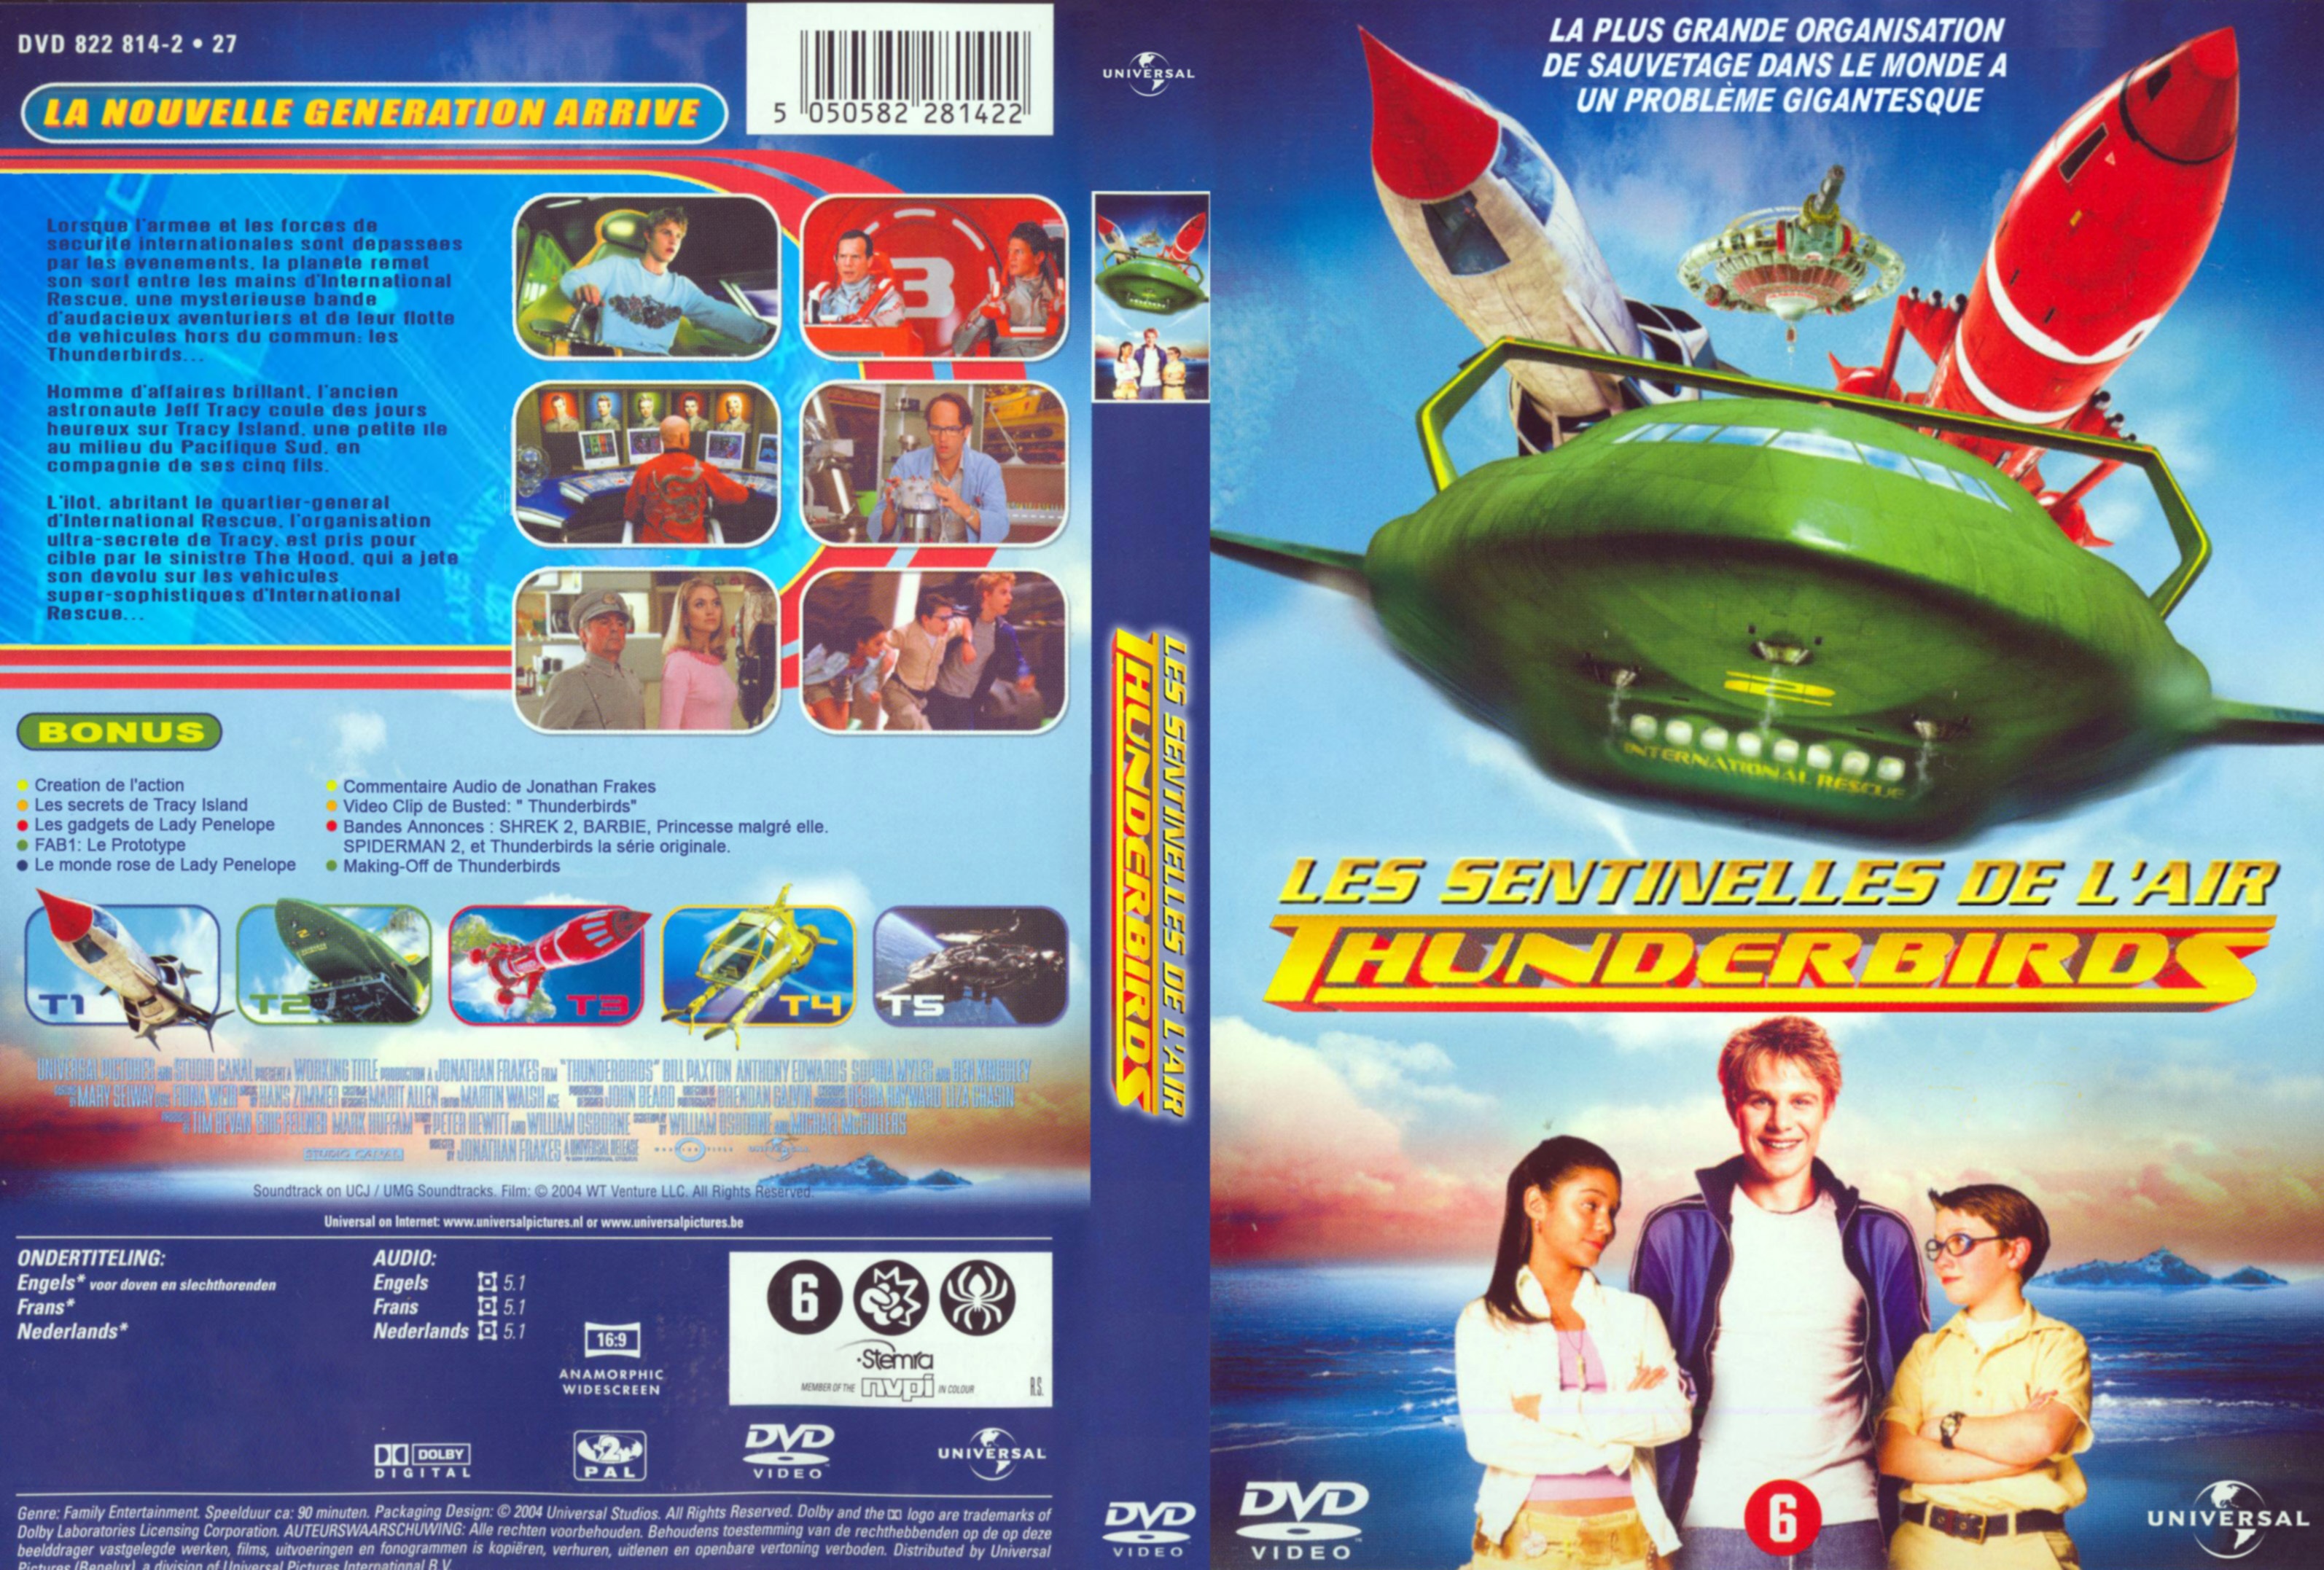 Jaquette DVD Thunderbirds v2